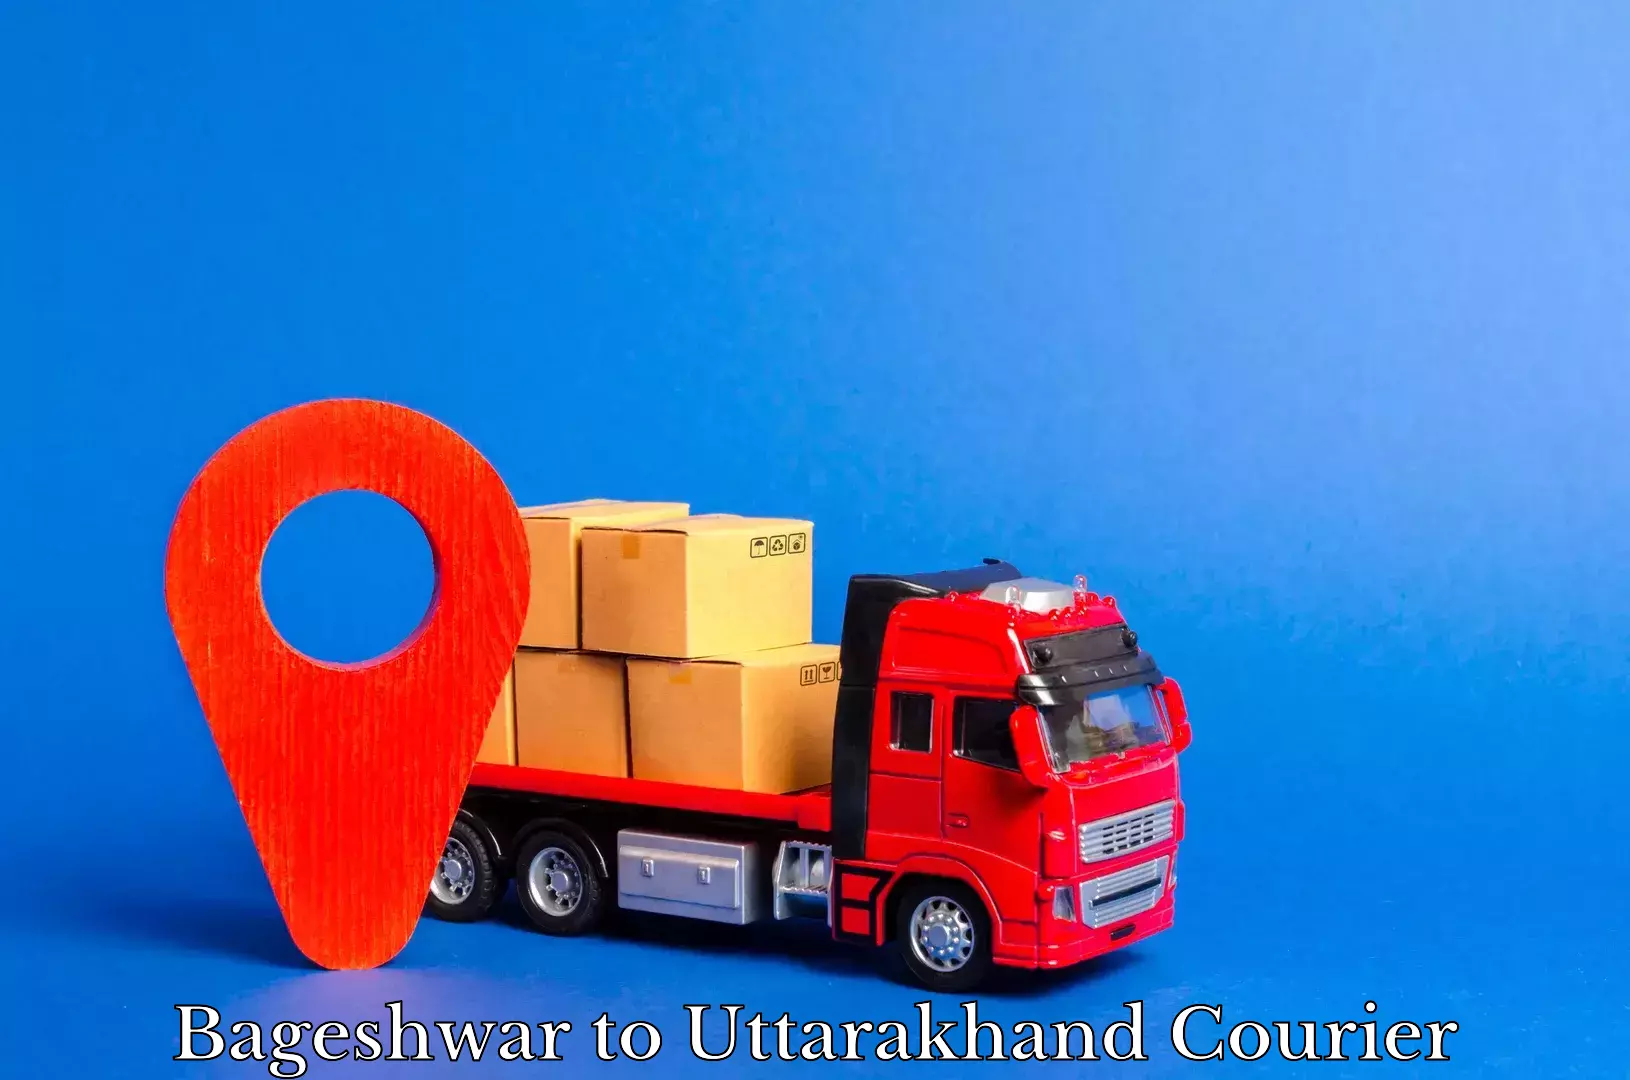 Express logistics service Bageshwar to Uttarakhand